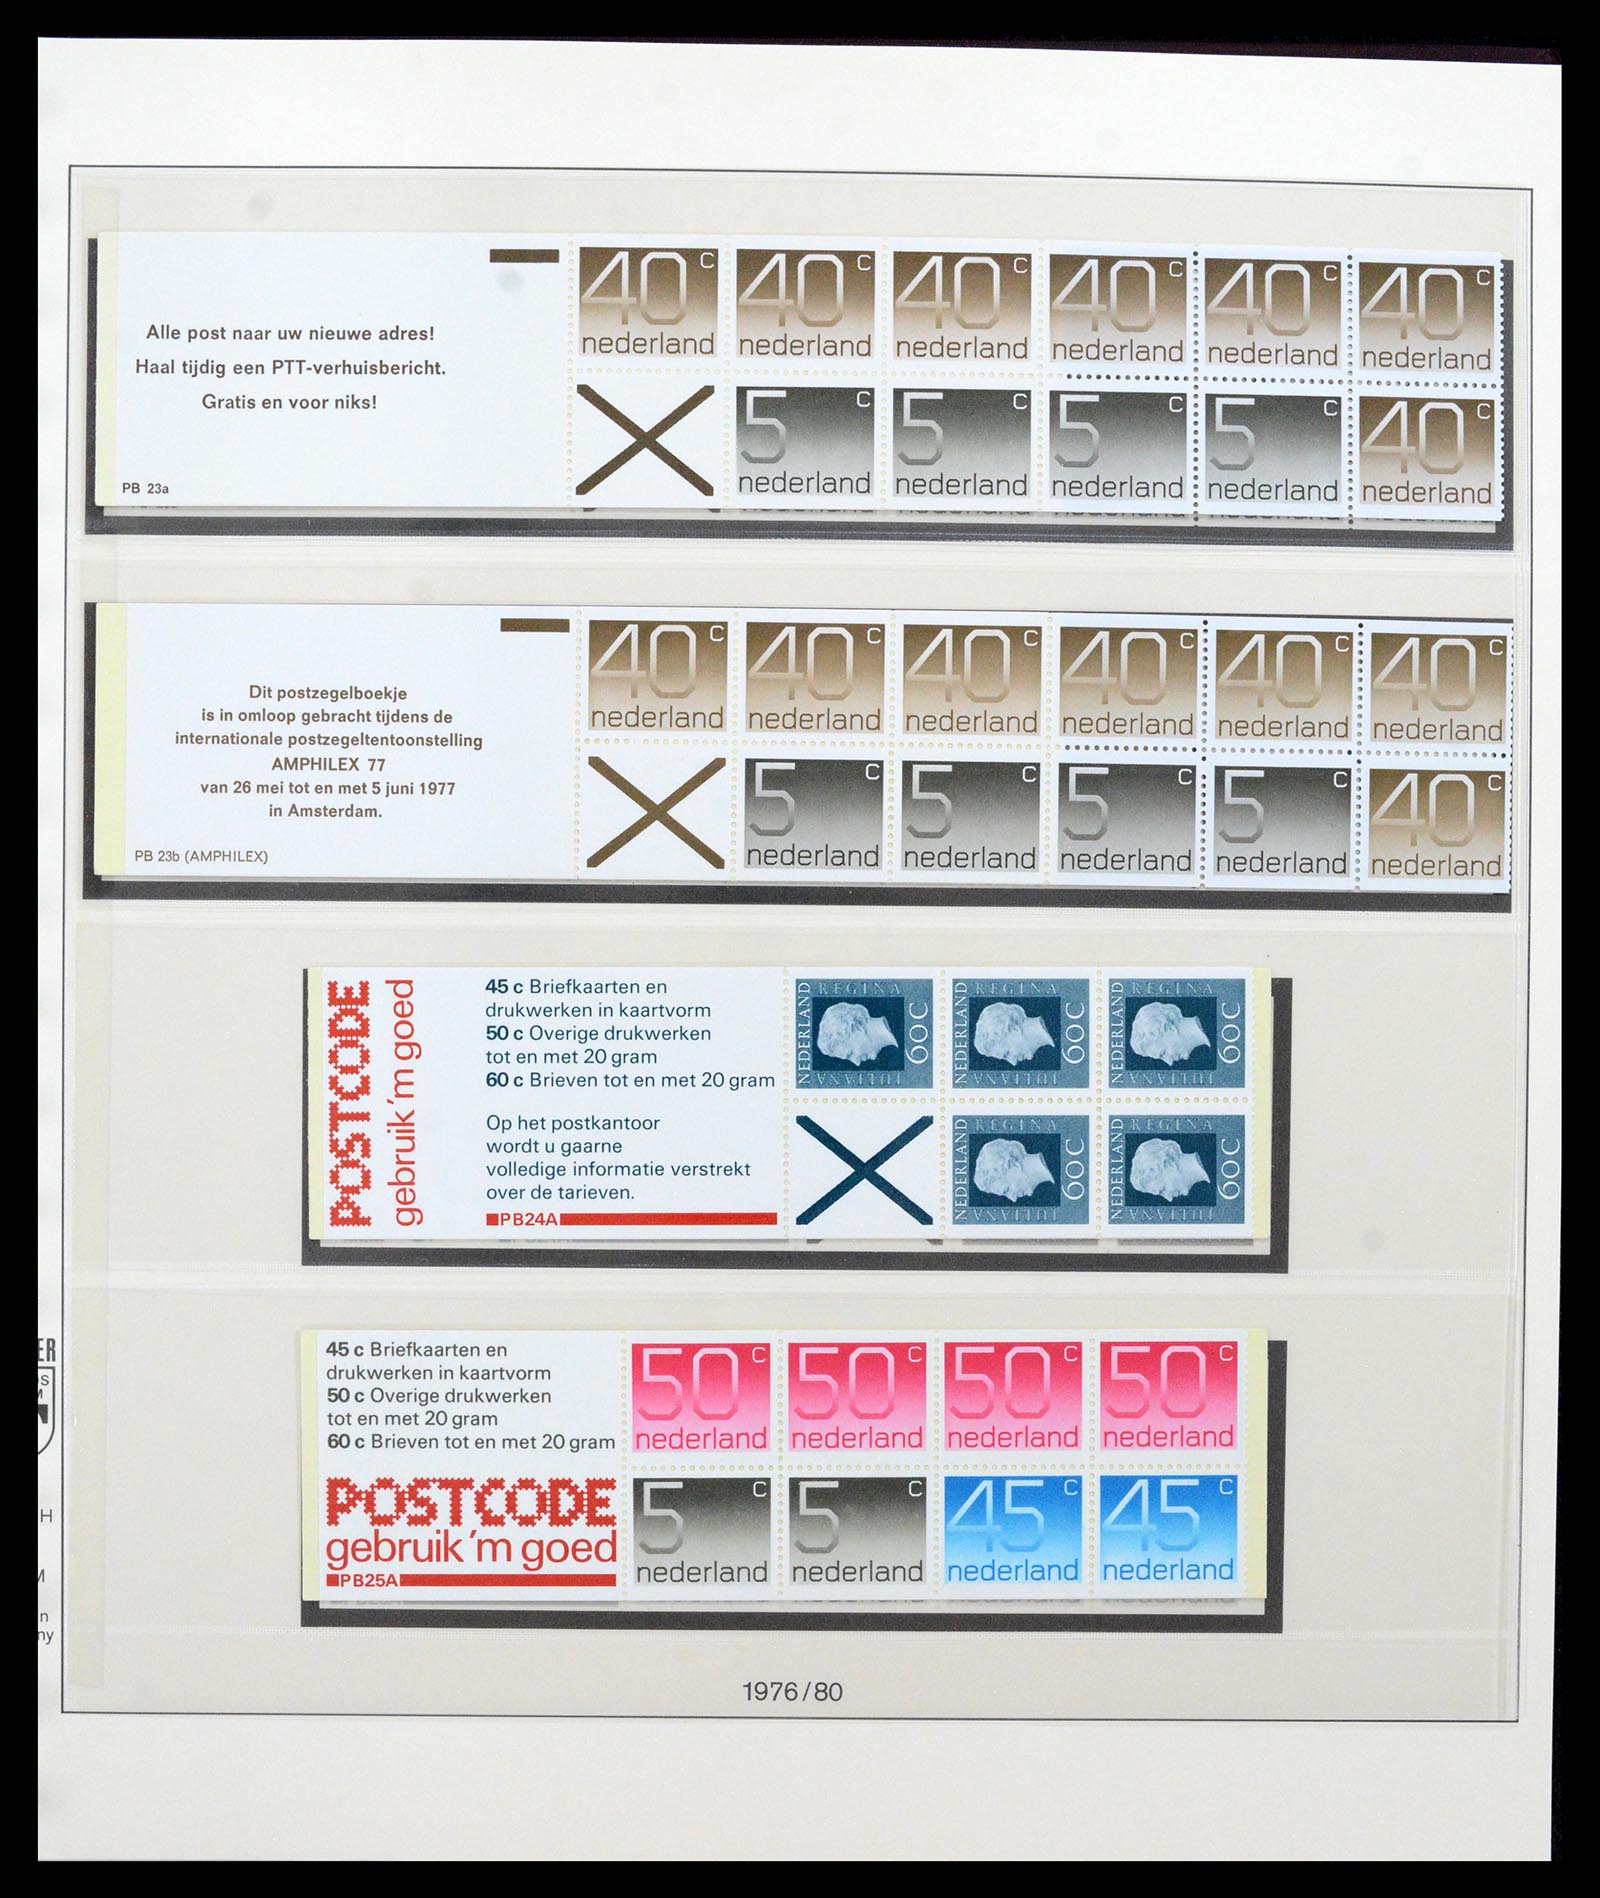 37994 018 - Stamp Collection 37994 Netherlands stampbooklets 1964-2002.